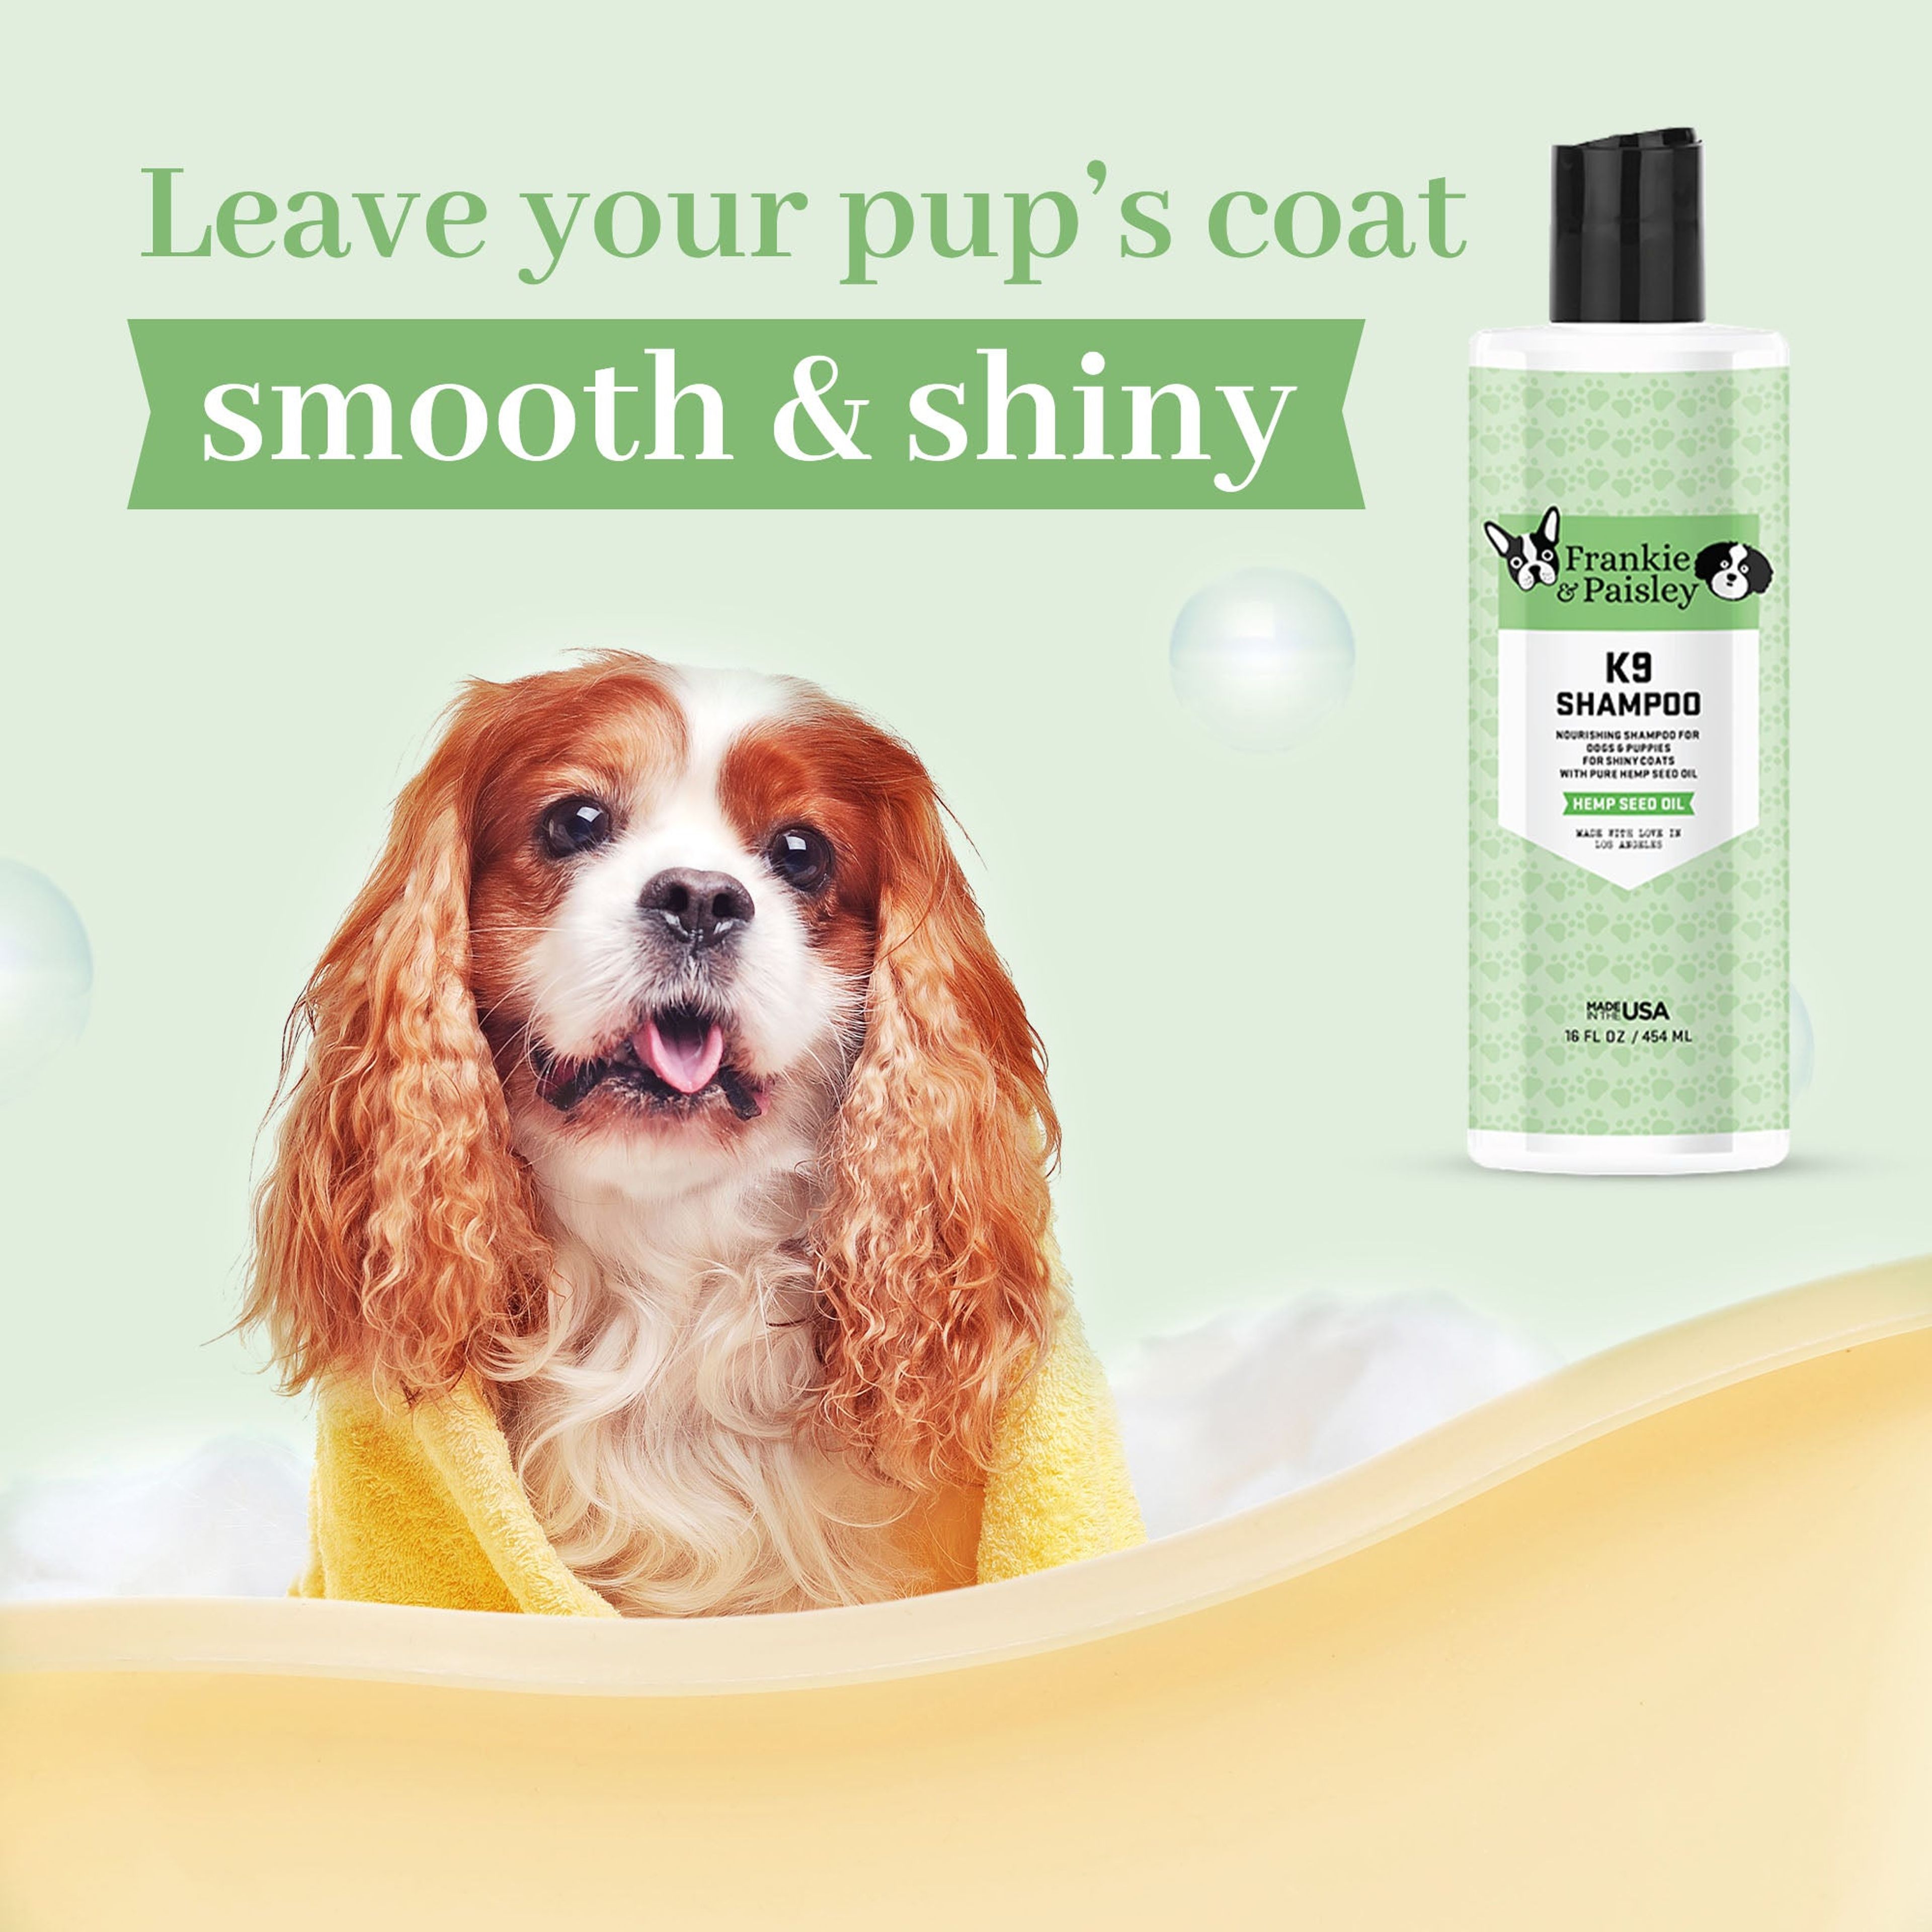 K9 Shampoo with Hemp Seed Oil - Shampoo for Dogs - 16oz